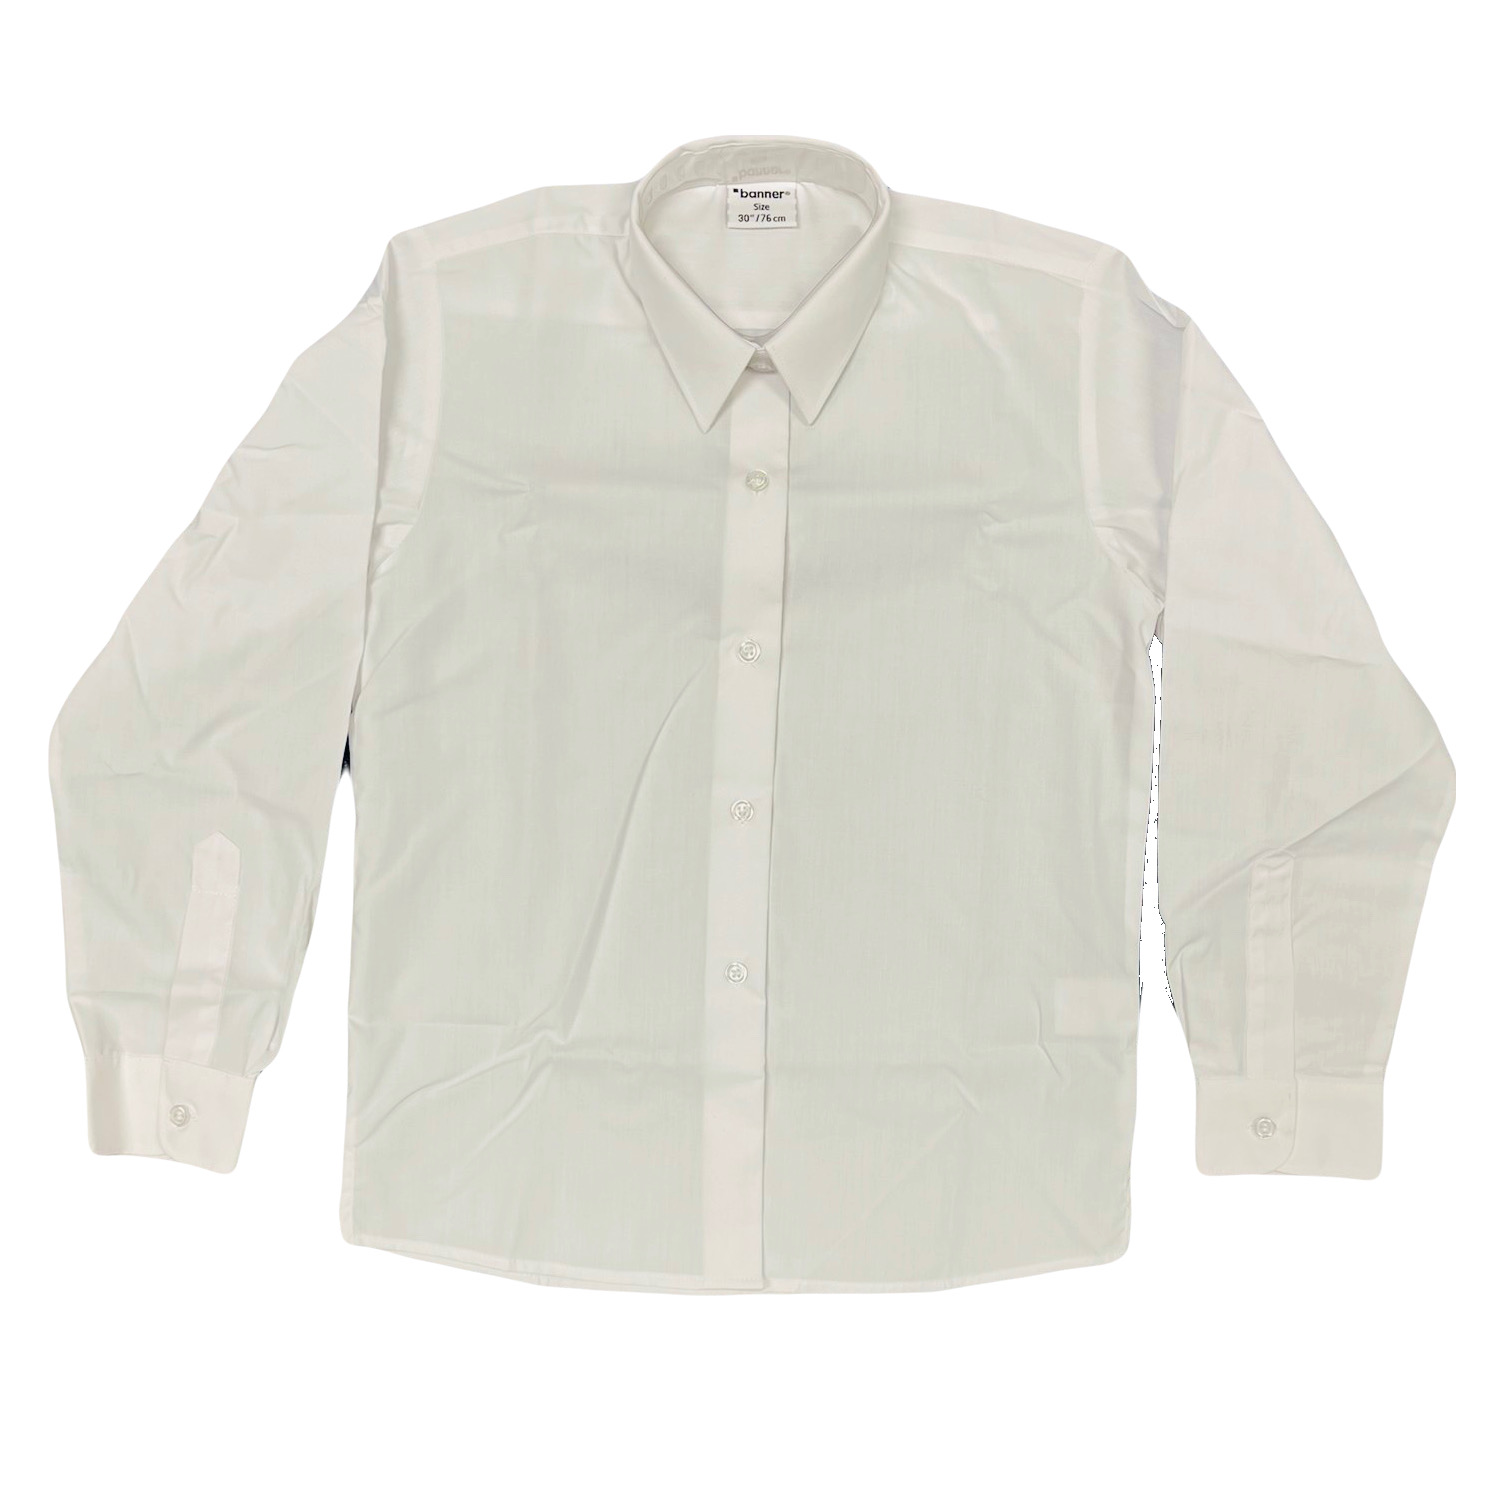 Girls Button up Shirt, long sleeve – 2 pack